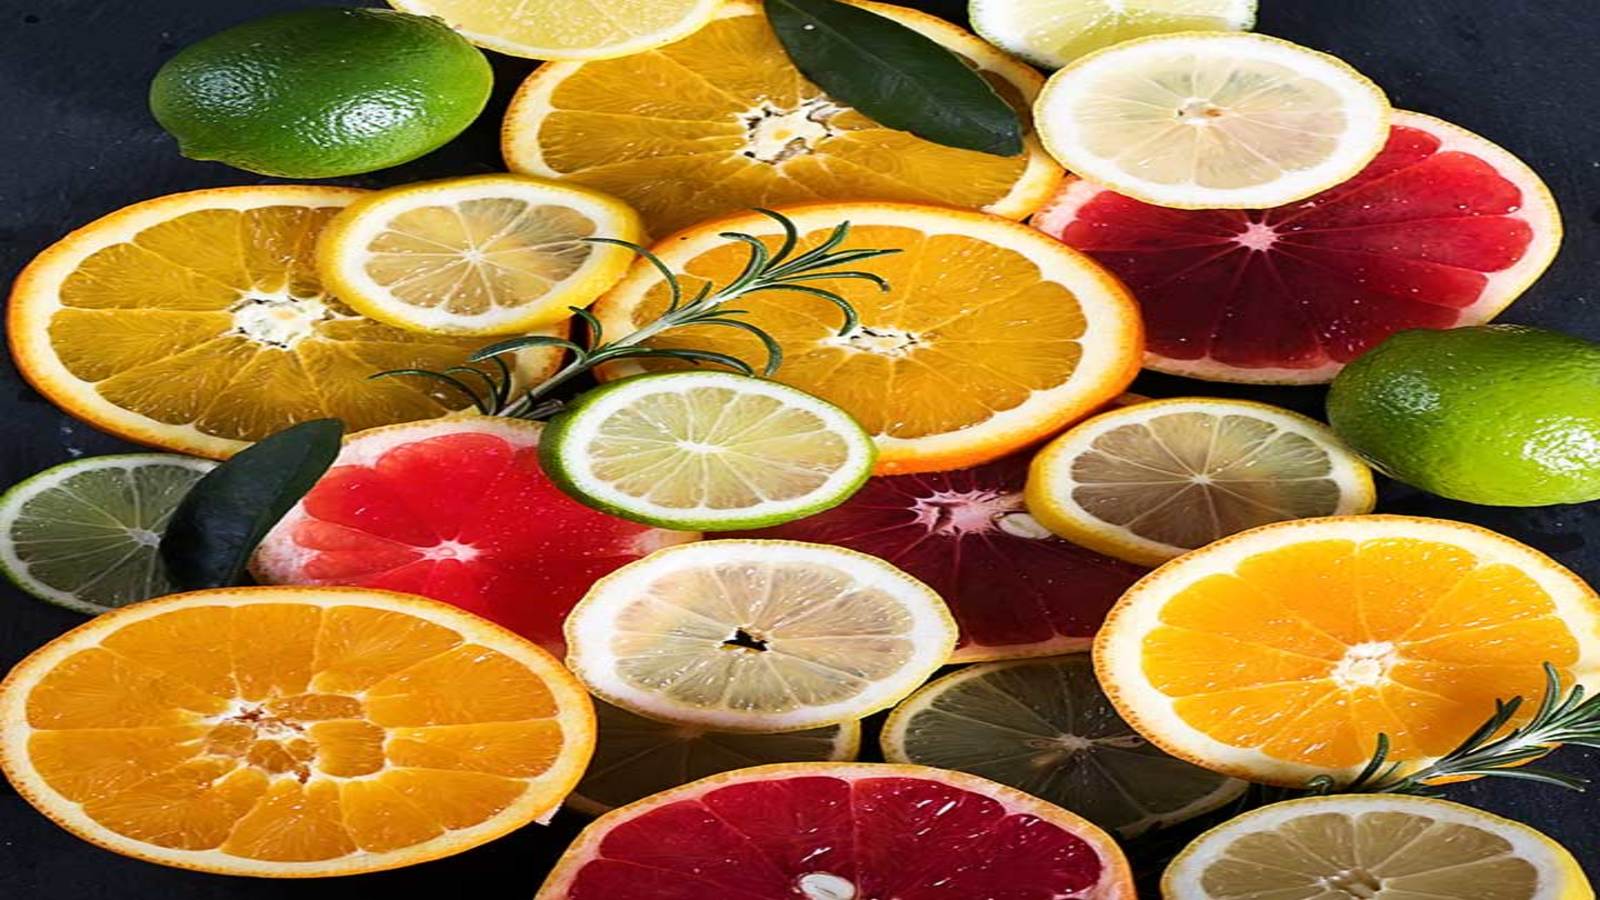 Save Foods flags off commercial pilot program for citrus fruit treatment